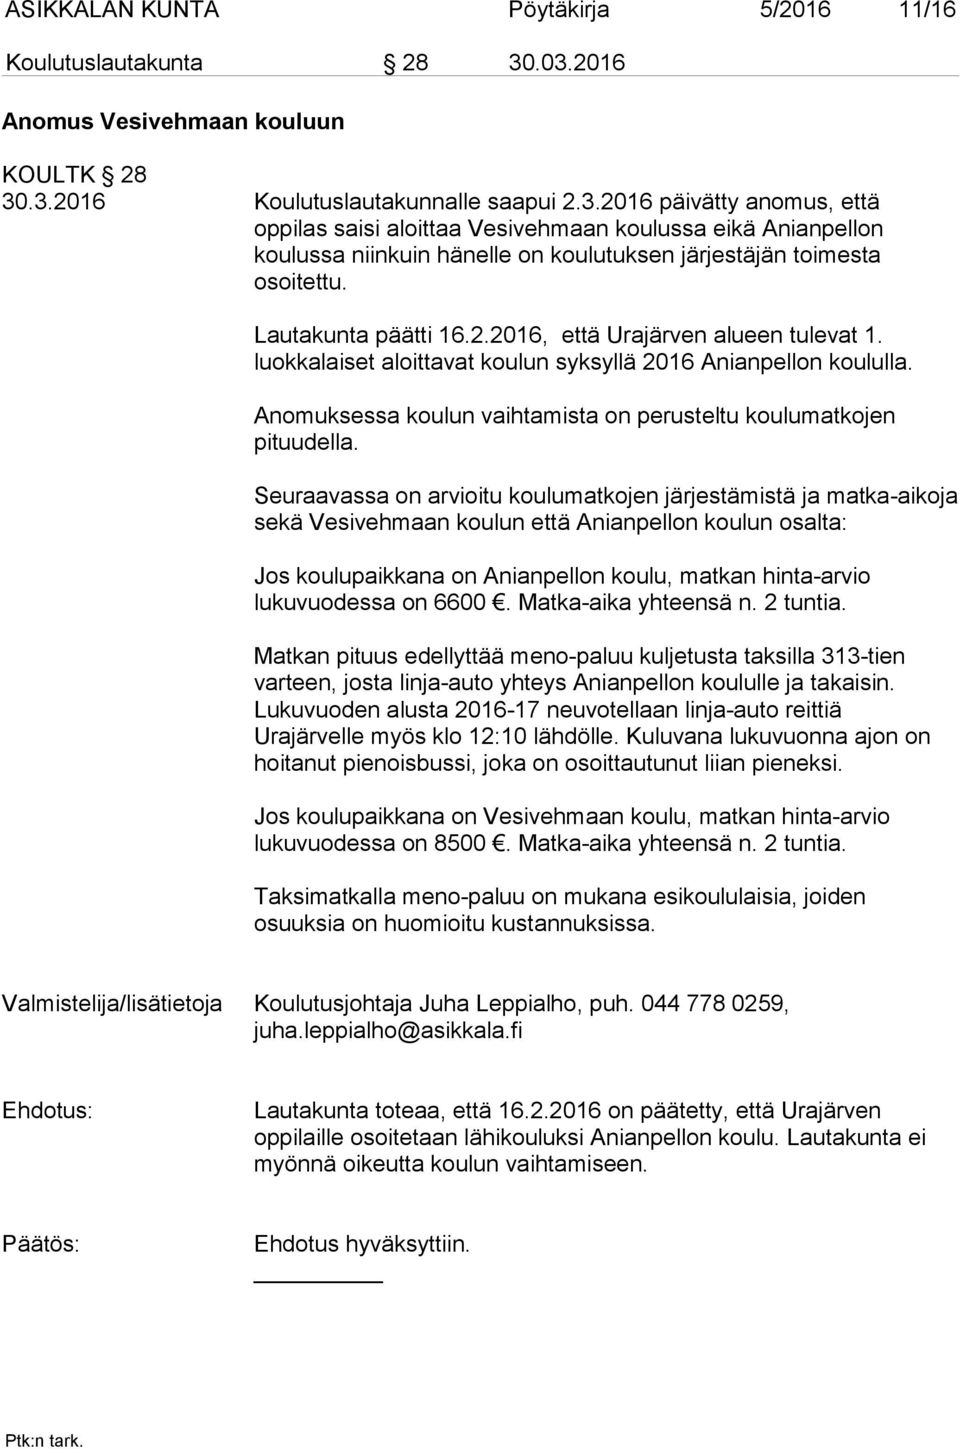 Lautakunta päätti 16.2.2016, että Urajärven alueen tulevat 1. luokkalaiset aloittavat koulun syksyllä 2016 Anianpellon koululla. Anomuksessa koulun vaihtamista on perusteltu koulumatkojen pituudella.